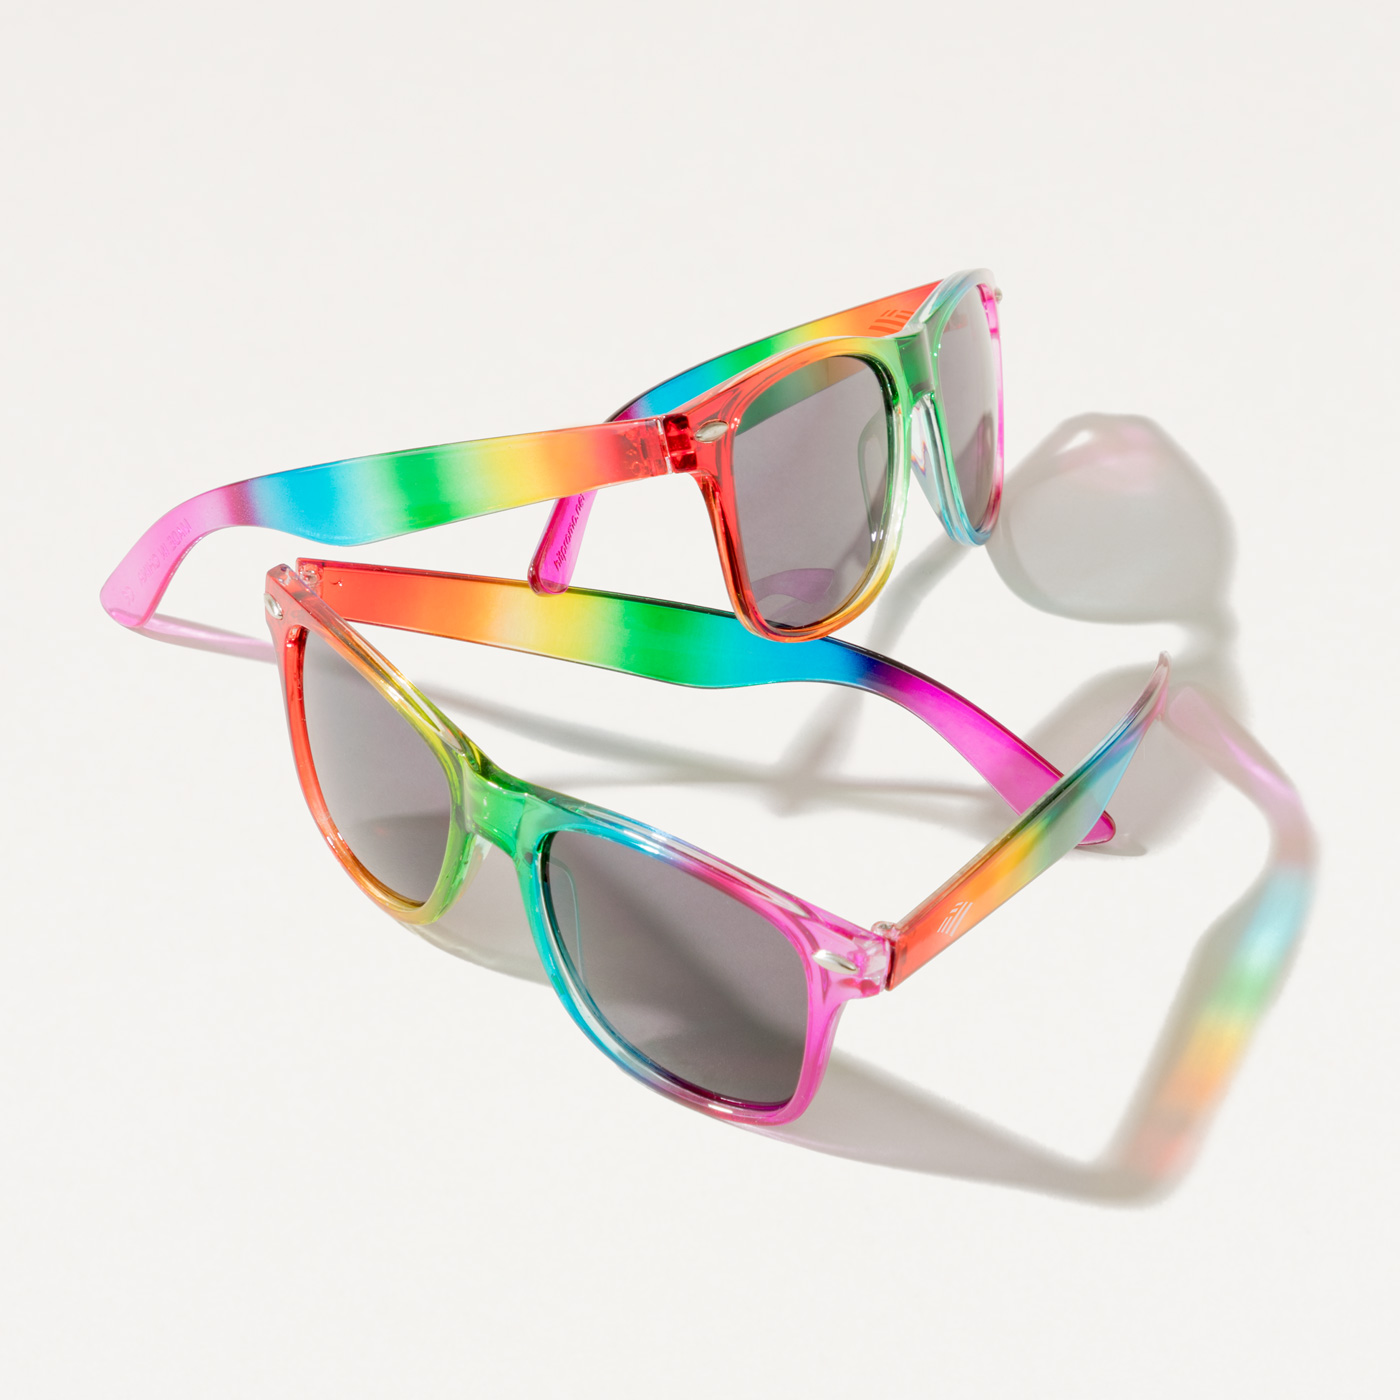 Buy Air Strike Grey & Blue Lens Black & Multicolor Frame Latest Sunglasses  For Men Women Boys & Girls - HCMBO1589 Online